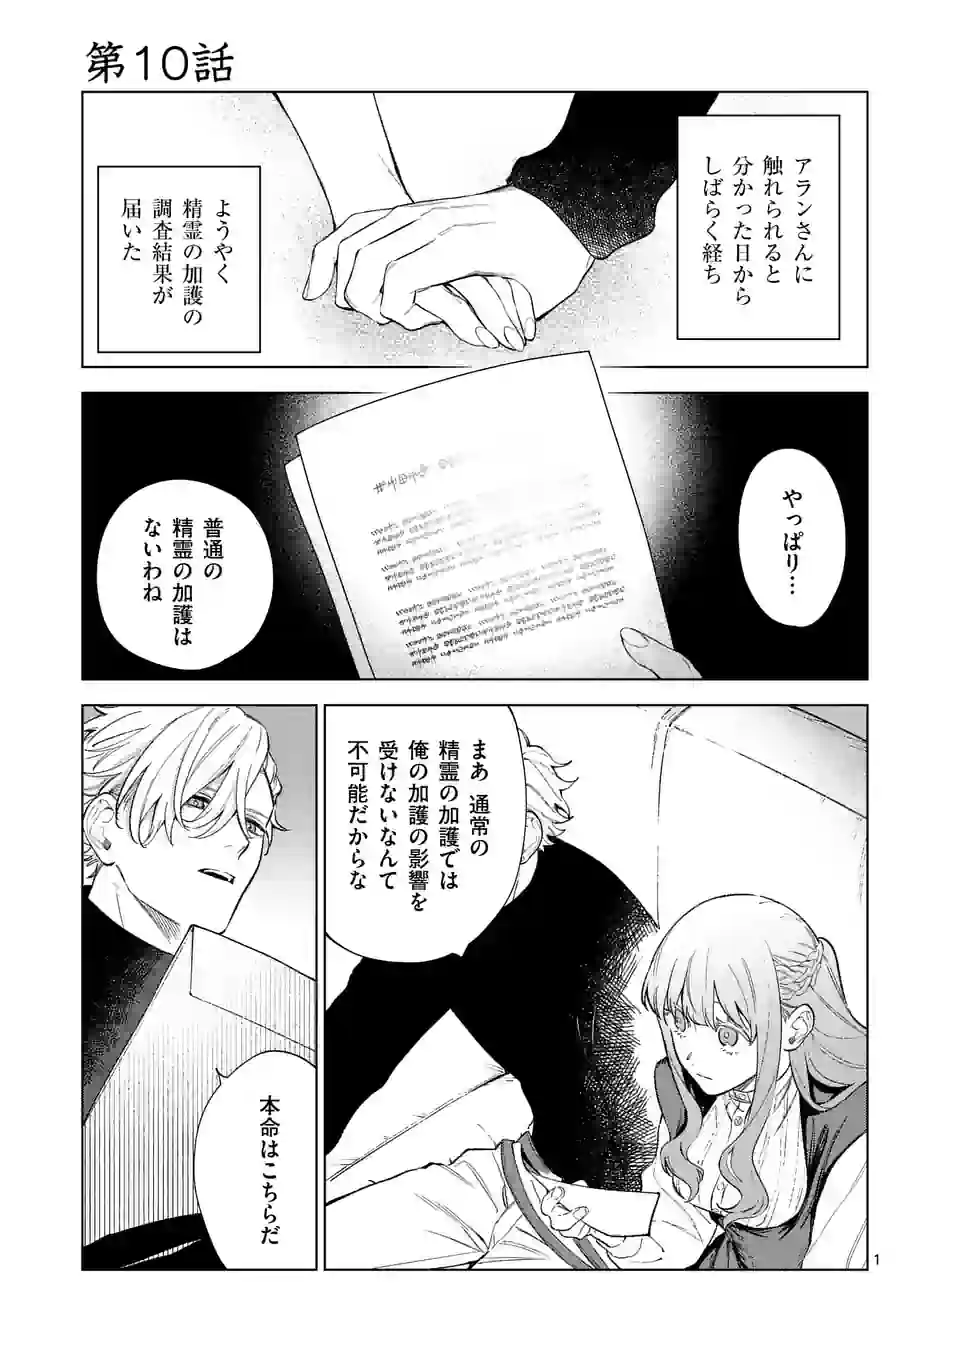 Mou Kyoumi ga Nai to Rikonsareta Reijou no Igai to Tanoshii Shinseikatsu - Chapter 10.1 - Page 1